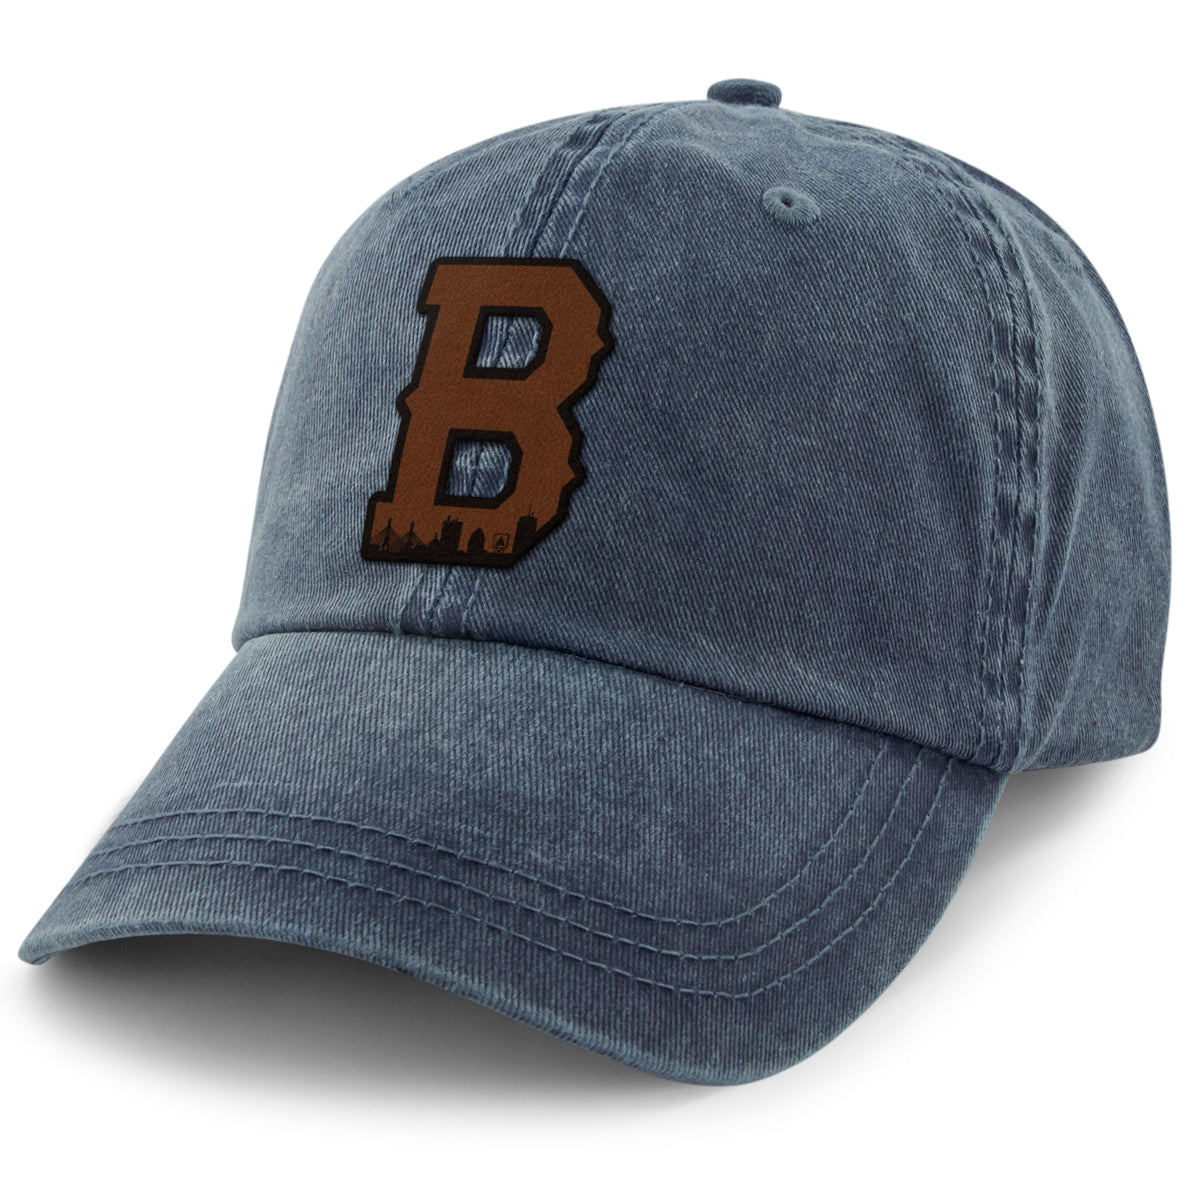 Boston B Skyline Leather Patch Washed Dad Hat - Chowdaheadz